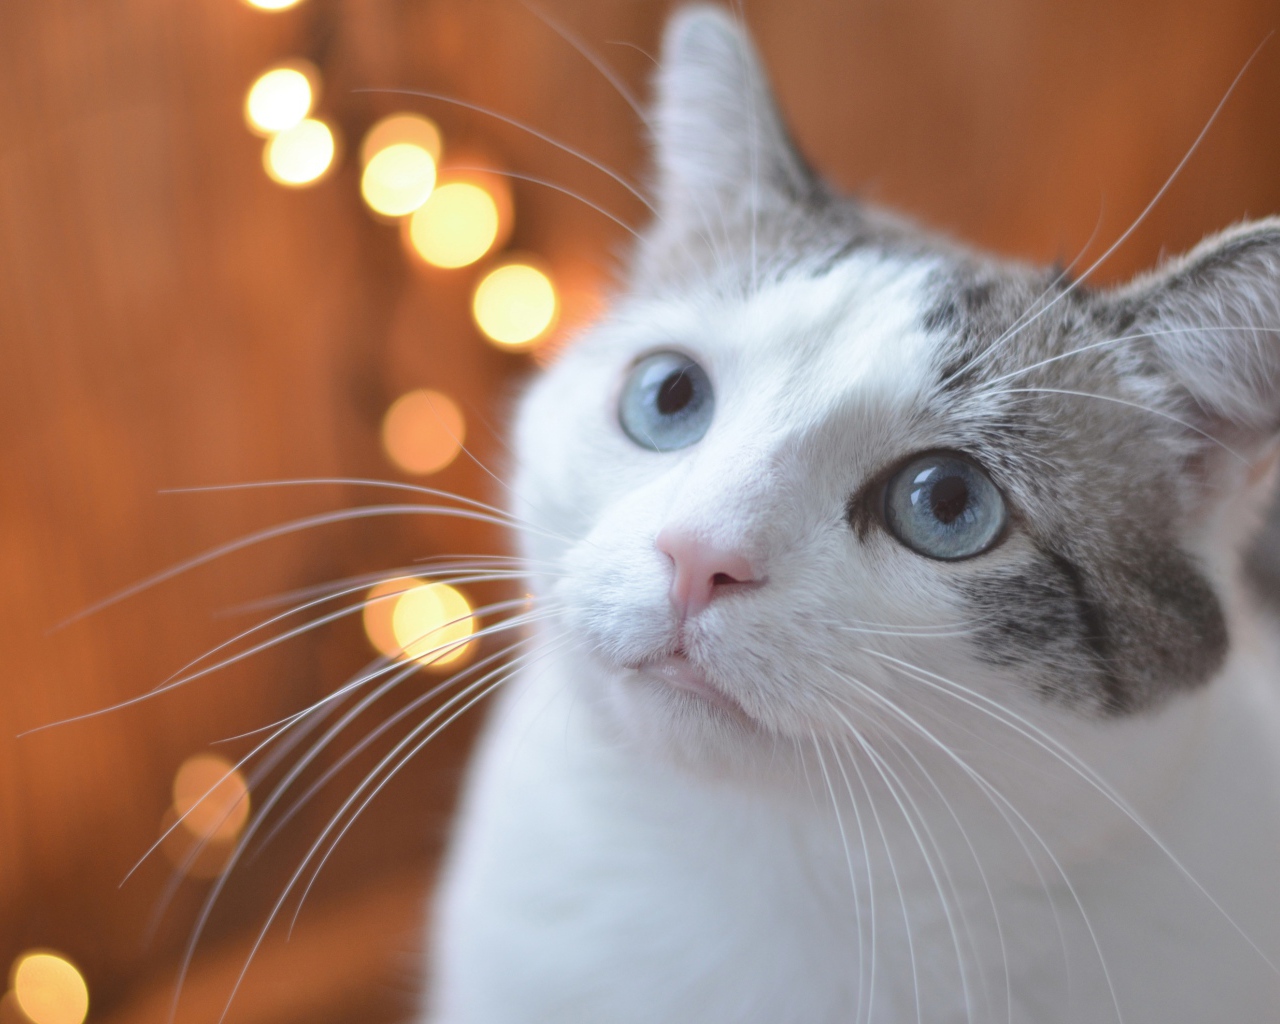 Взгляд серо-белого кота с голубыми глазами